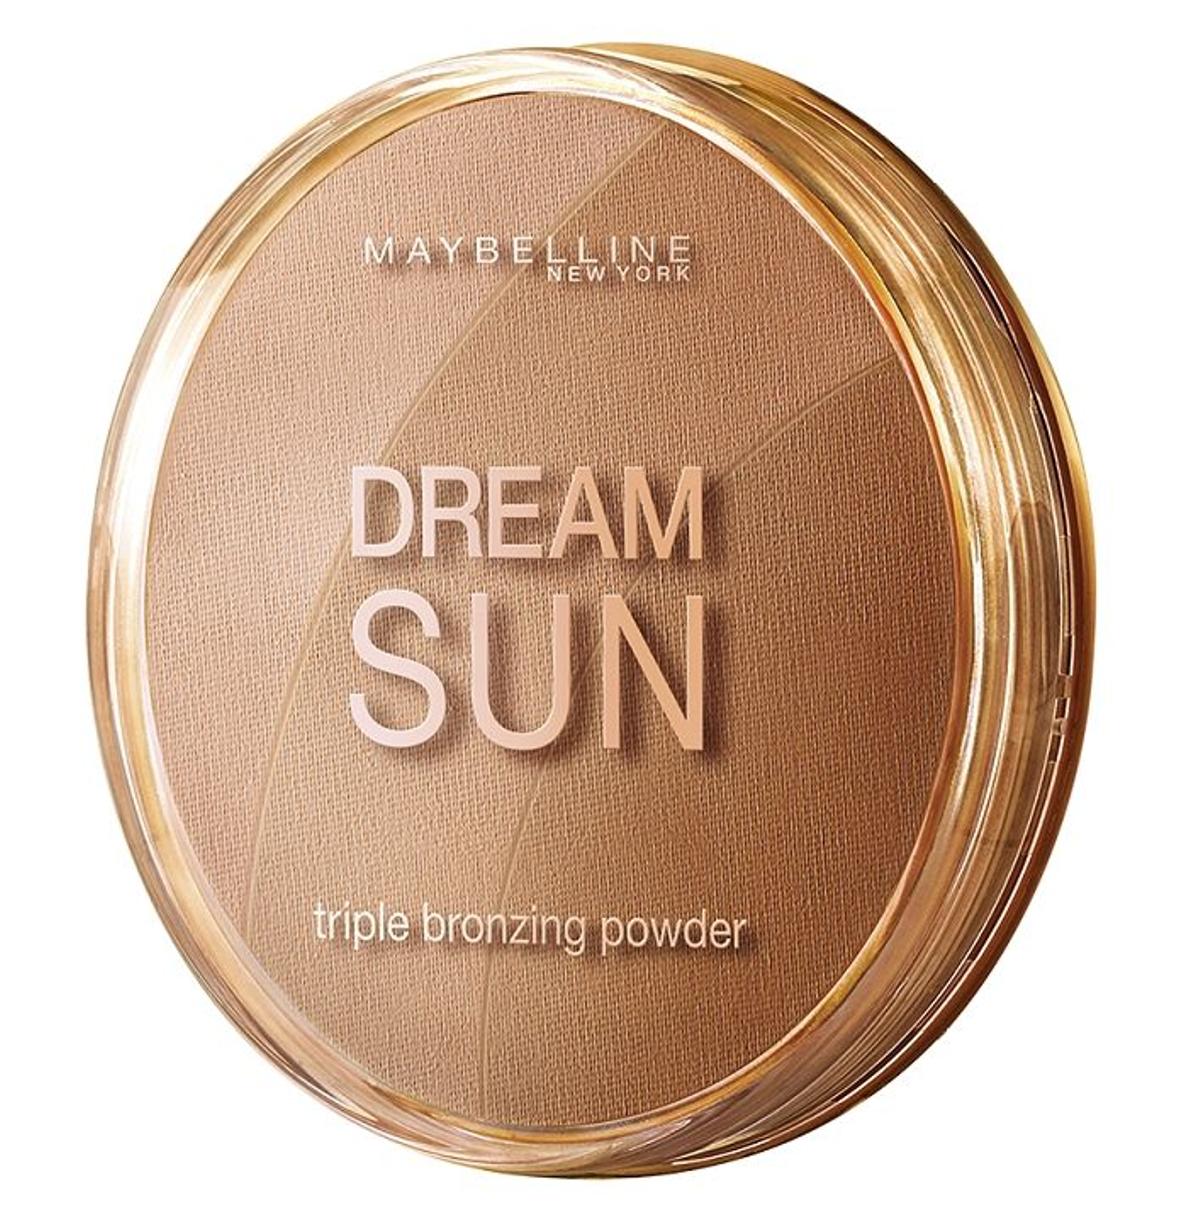 Dream Sun Bronze 01, Maybelline